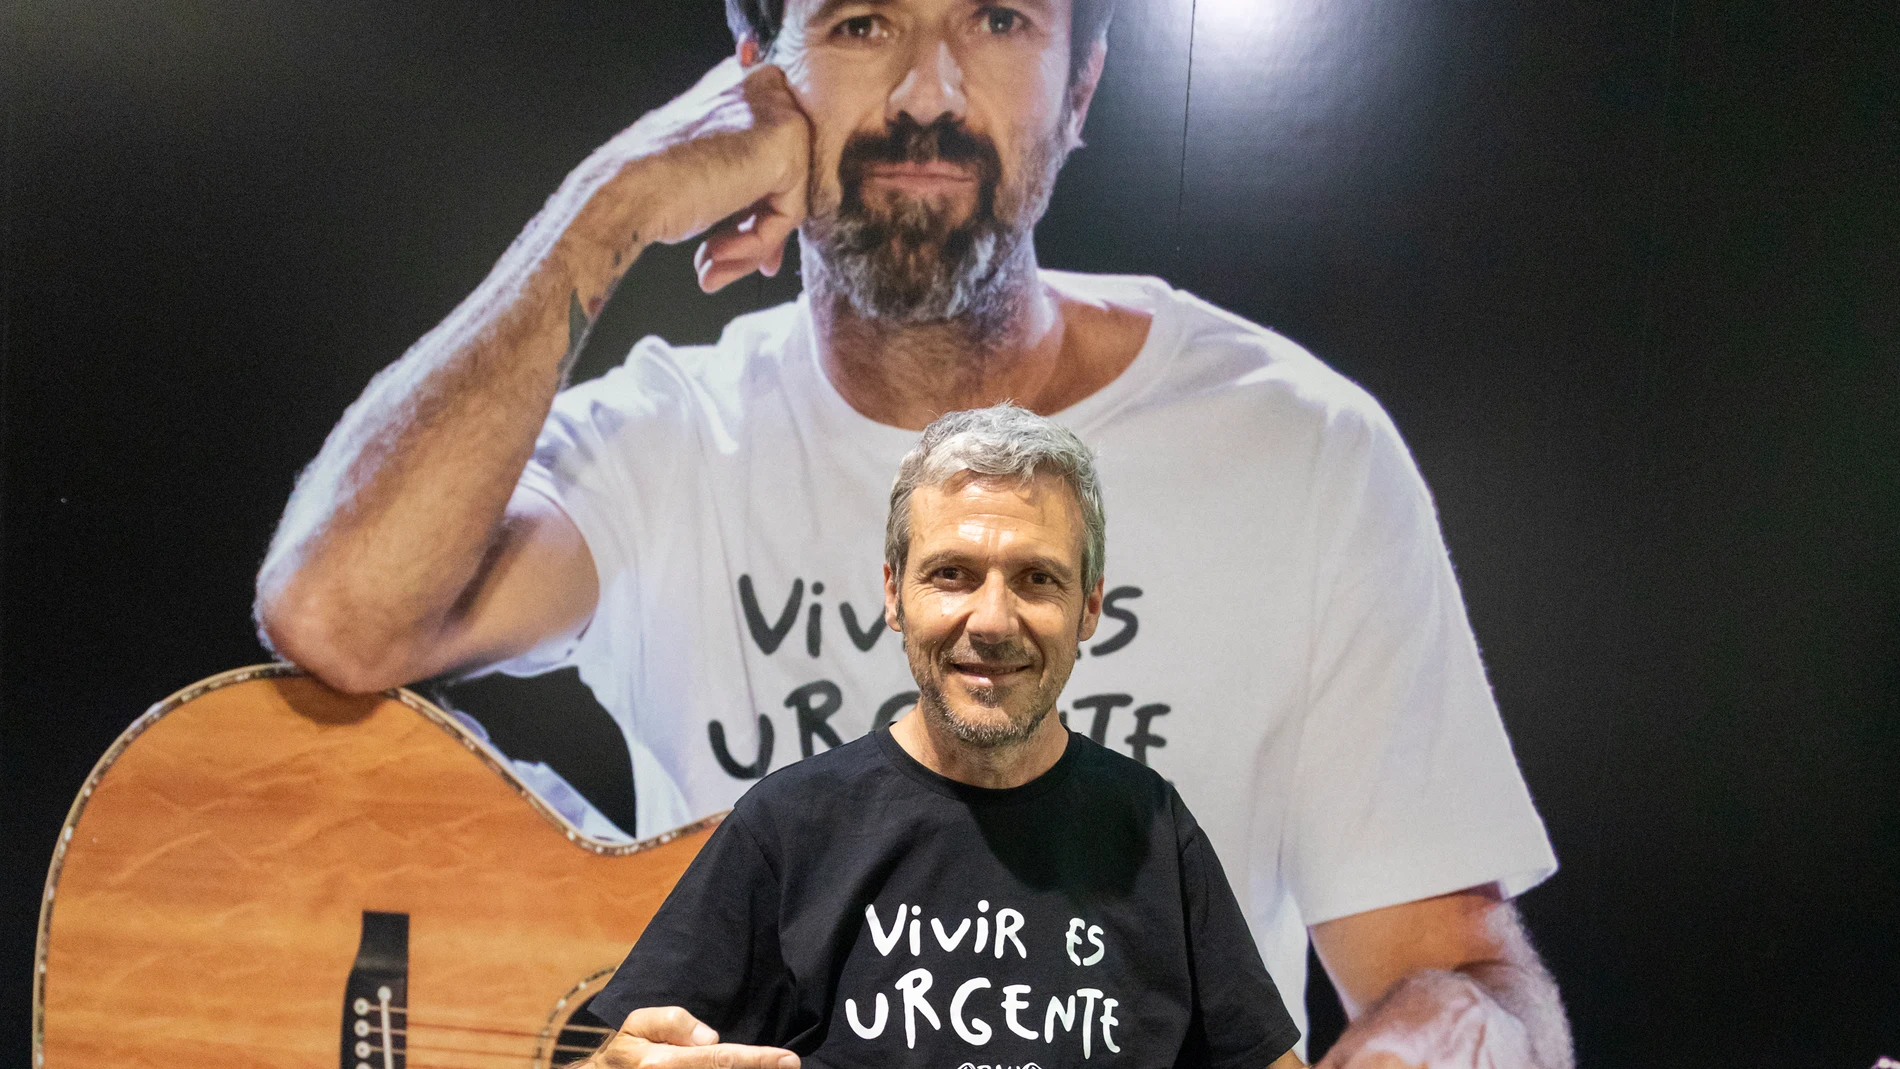 Condimento Audaz Espolvorear Pau Donés te recuerda, con su camiseta, que “Vivir es urgente”